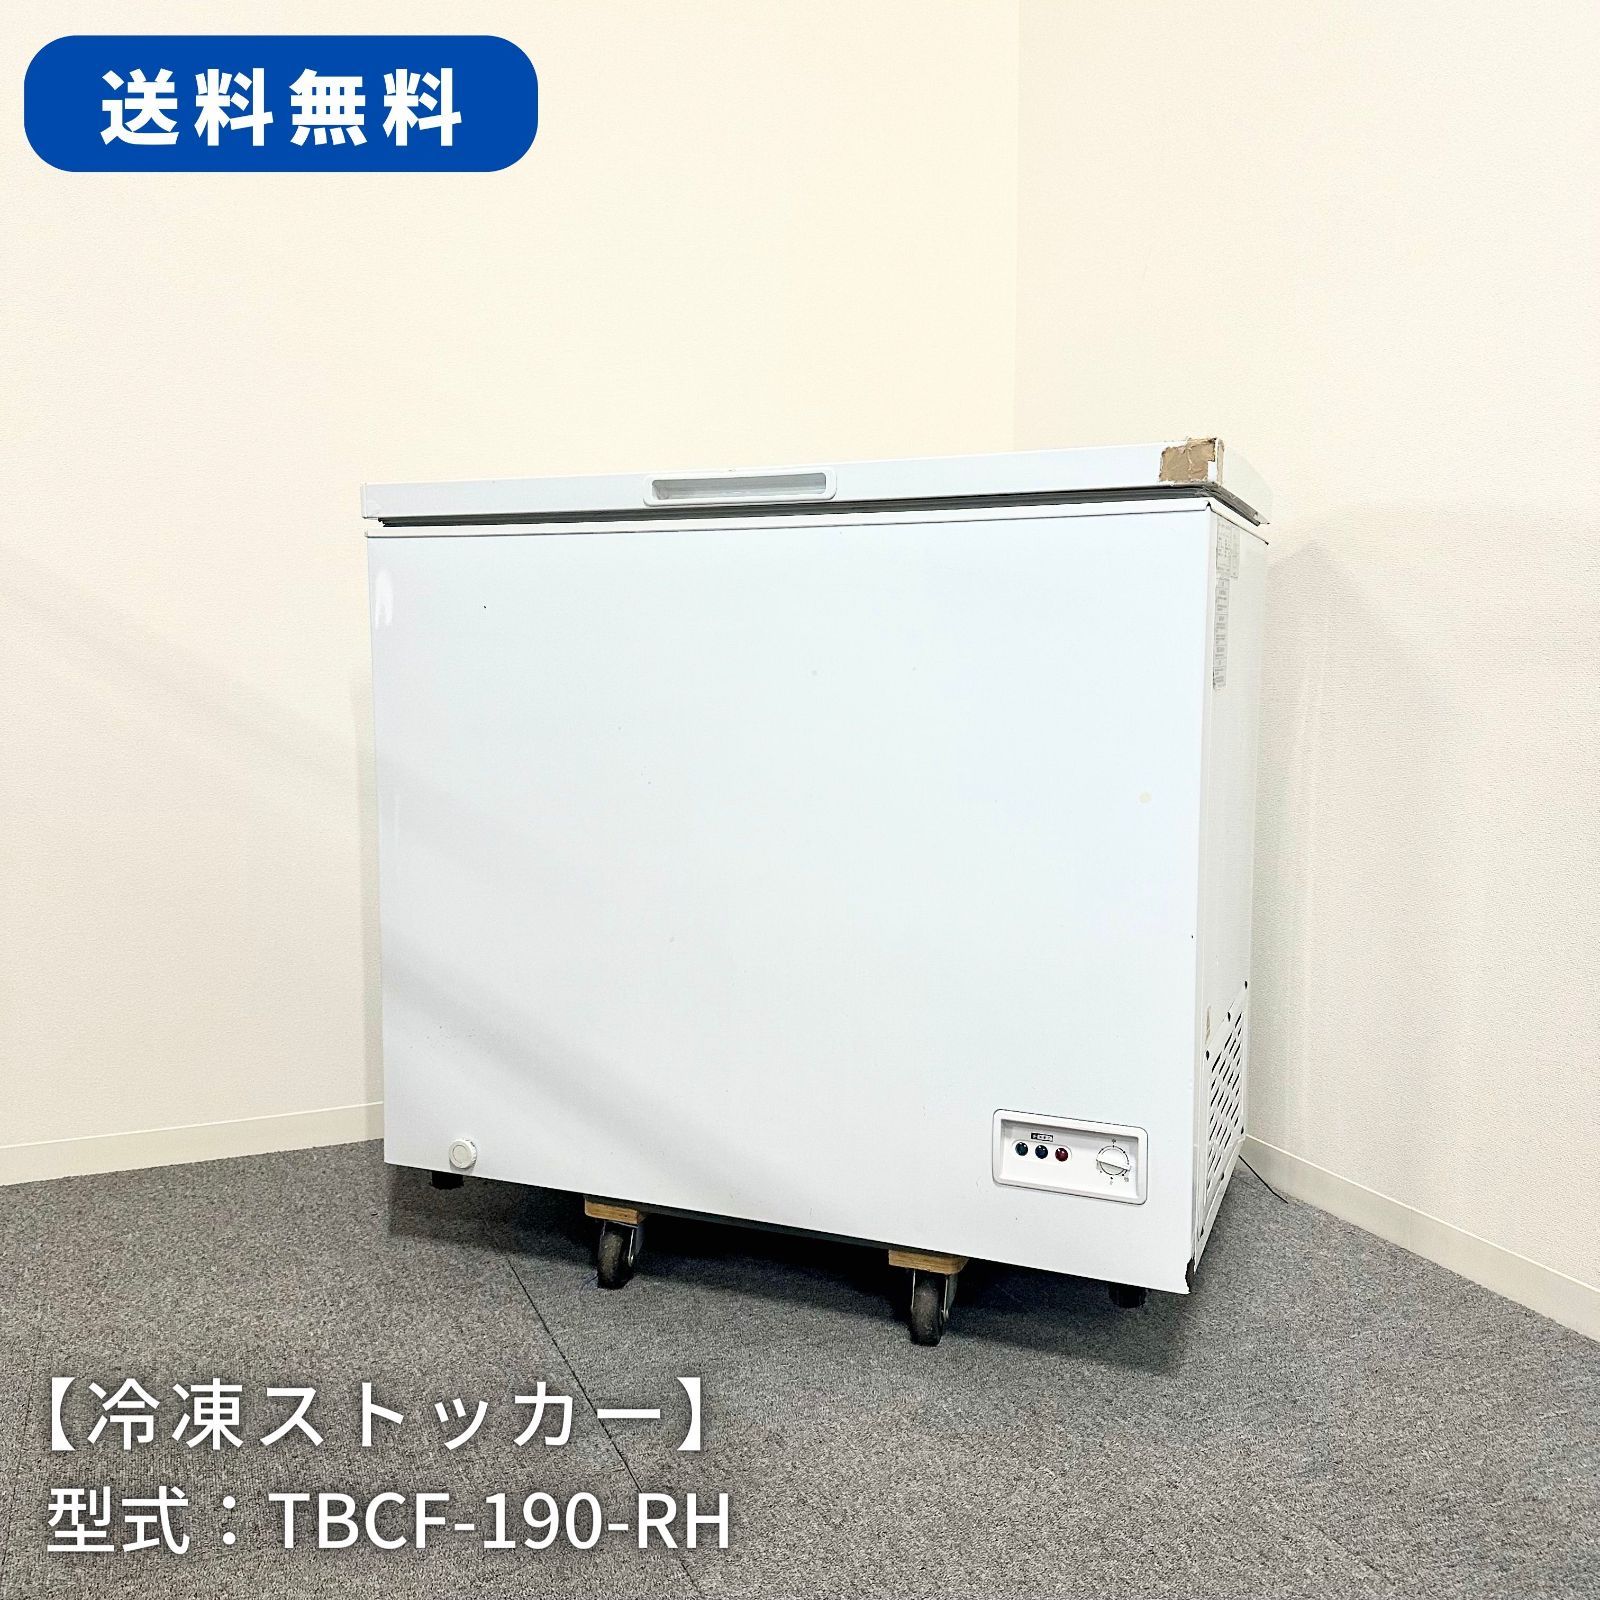 冷凍ストッカー/TENPOS/TBCF-190-RH/幅950mm×奥行564mm×高さ845mm/2015 